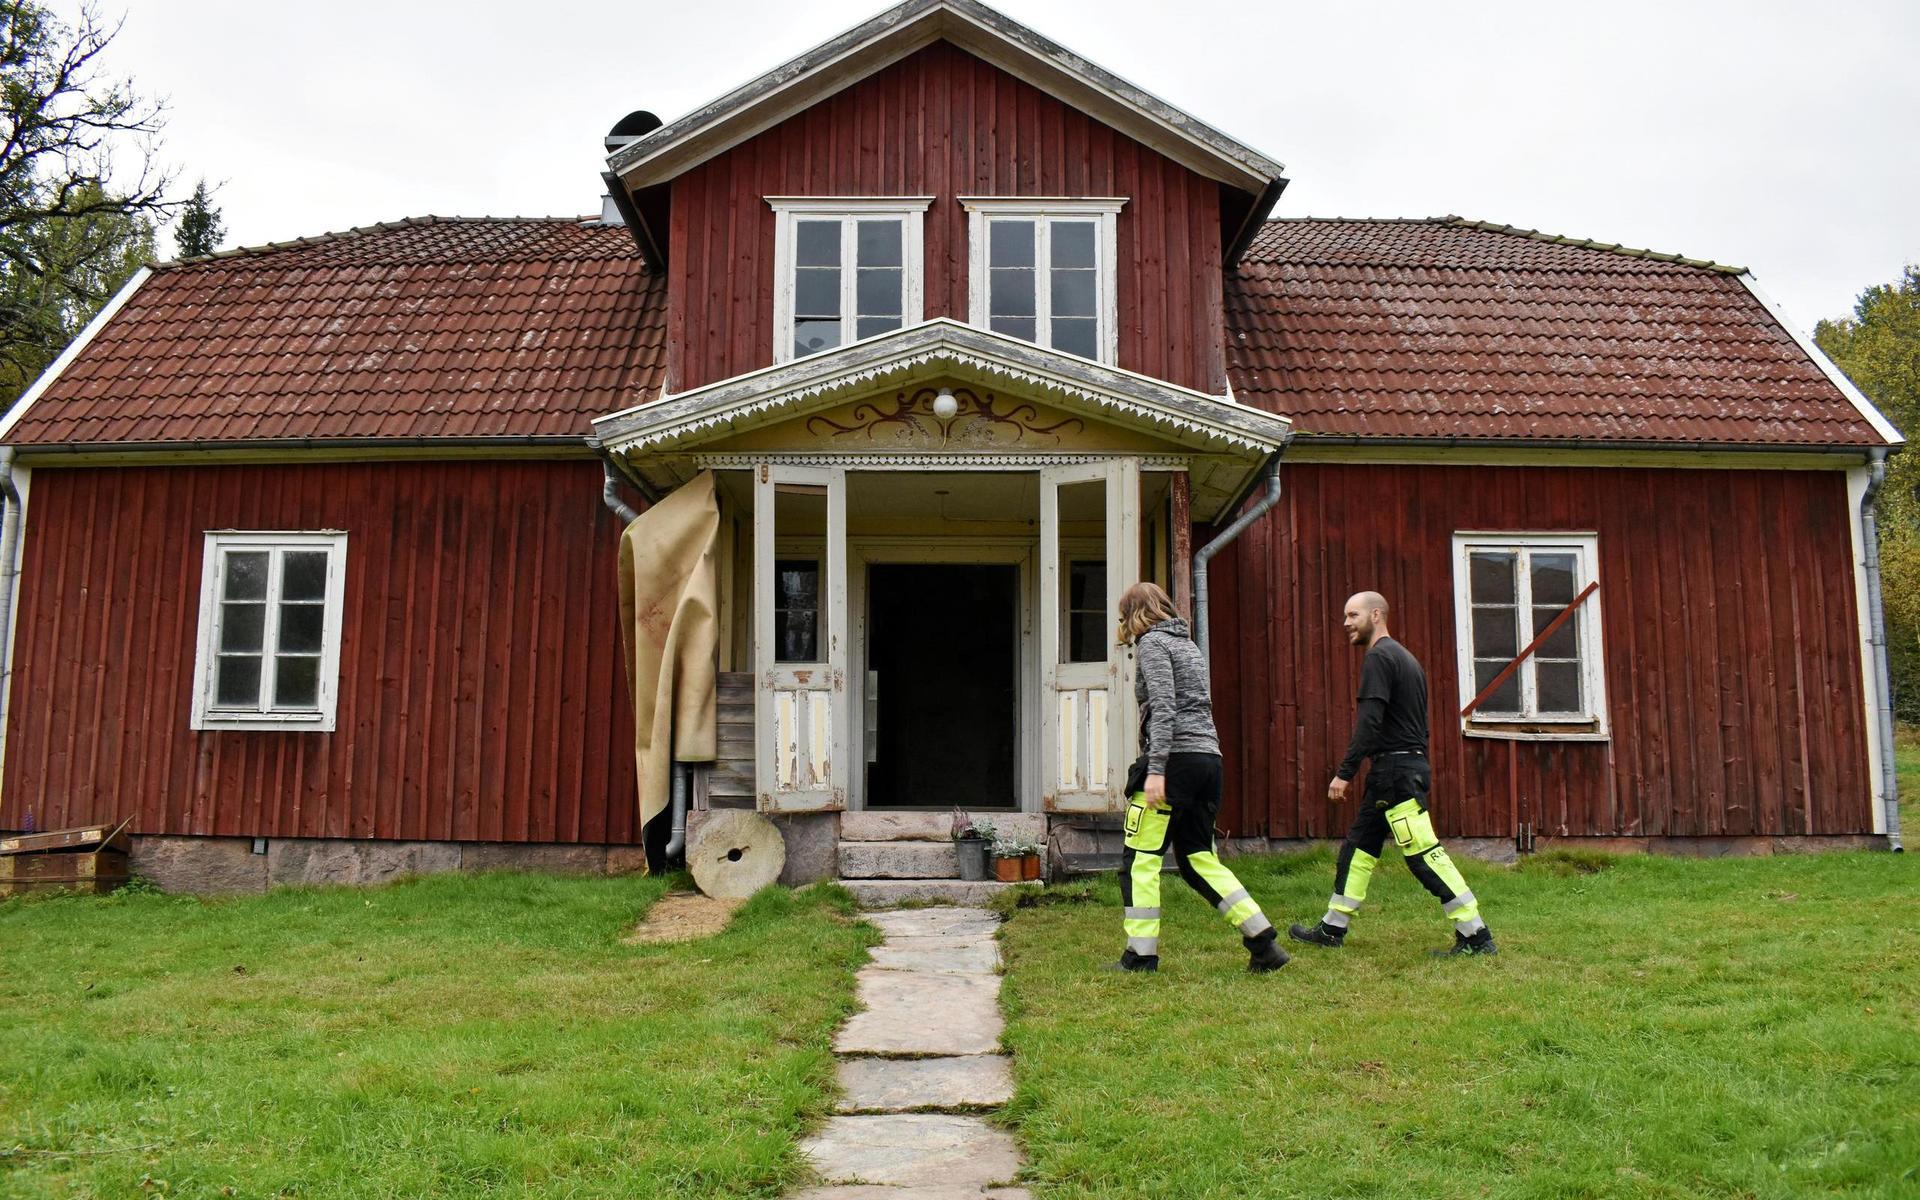 Paret Runemyr startade Instagramkontot ”Lassaberg1830” för att dokumentera sitt husprojekt, men också för att dela med sig av sin resa till familjemedlemmar och andra intresserade.